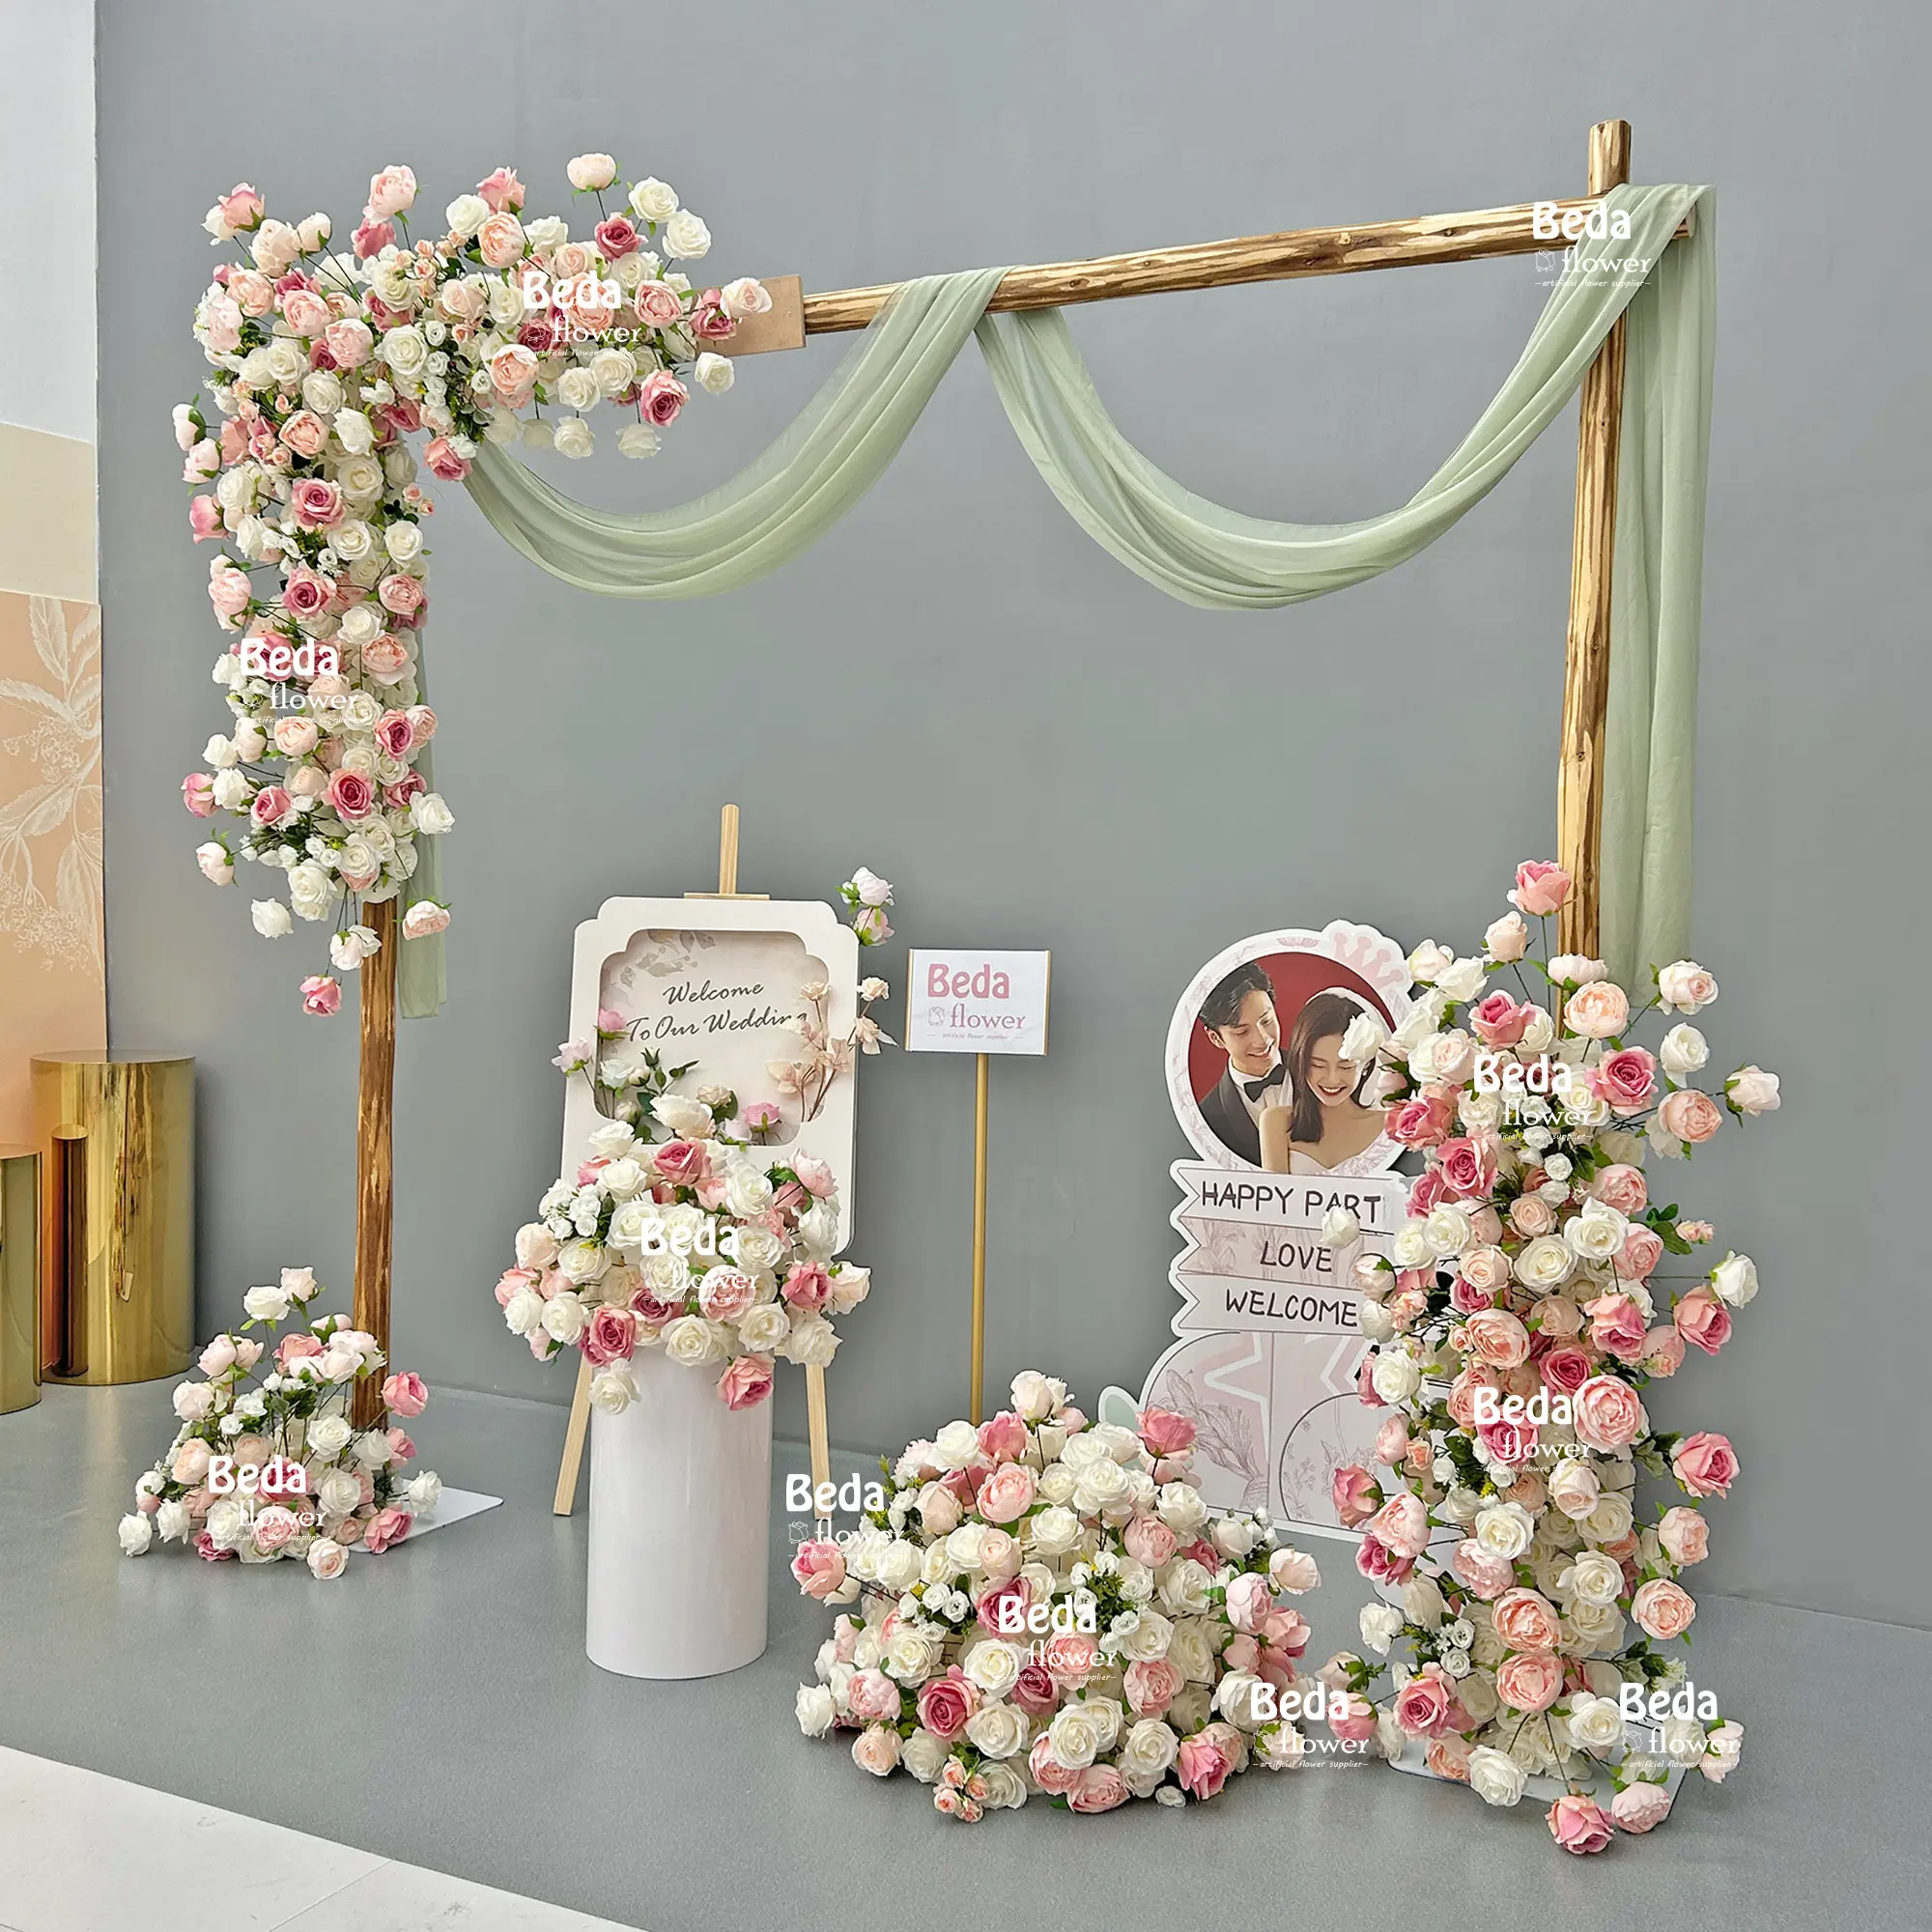 Beda romantico decorativo fiore artificiale struttura trapezidale tavolo centrotavola decorazione palla fiore decorazione matrimonio sfondo parete